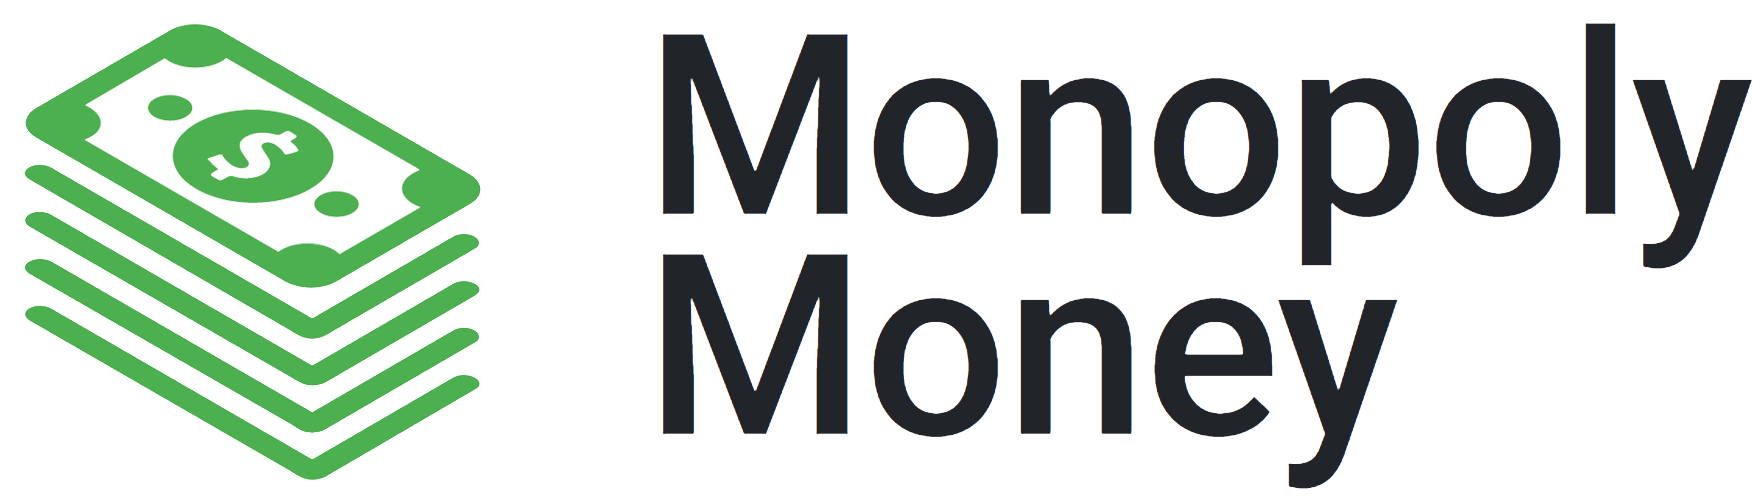 Monopoly Money Logo